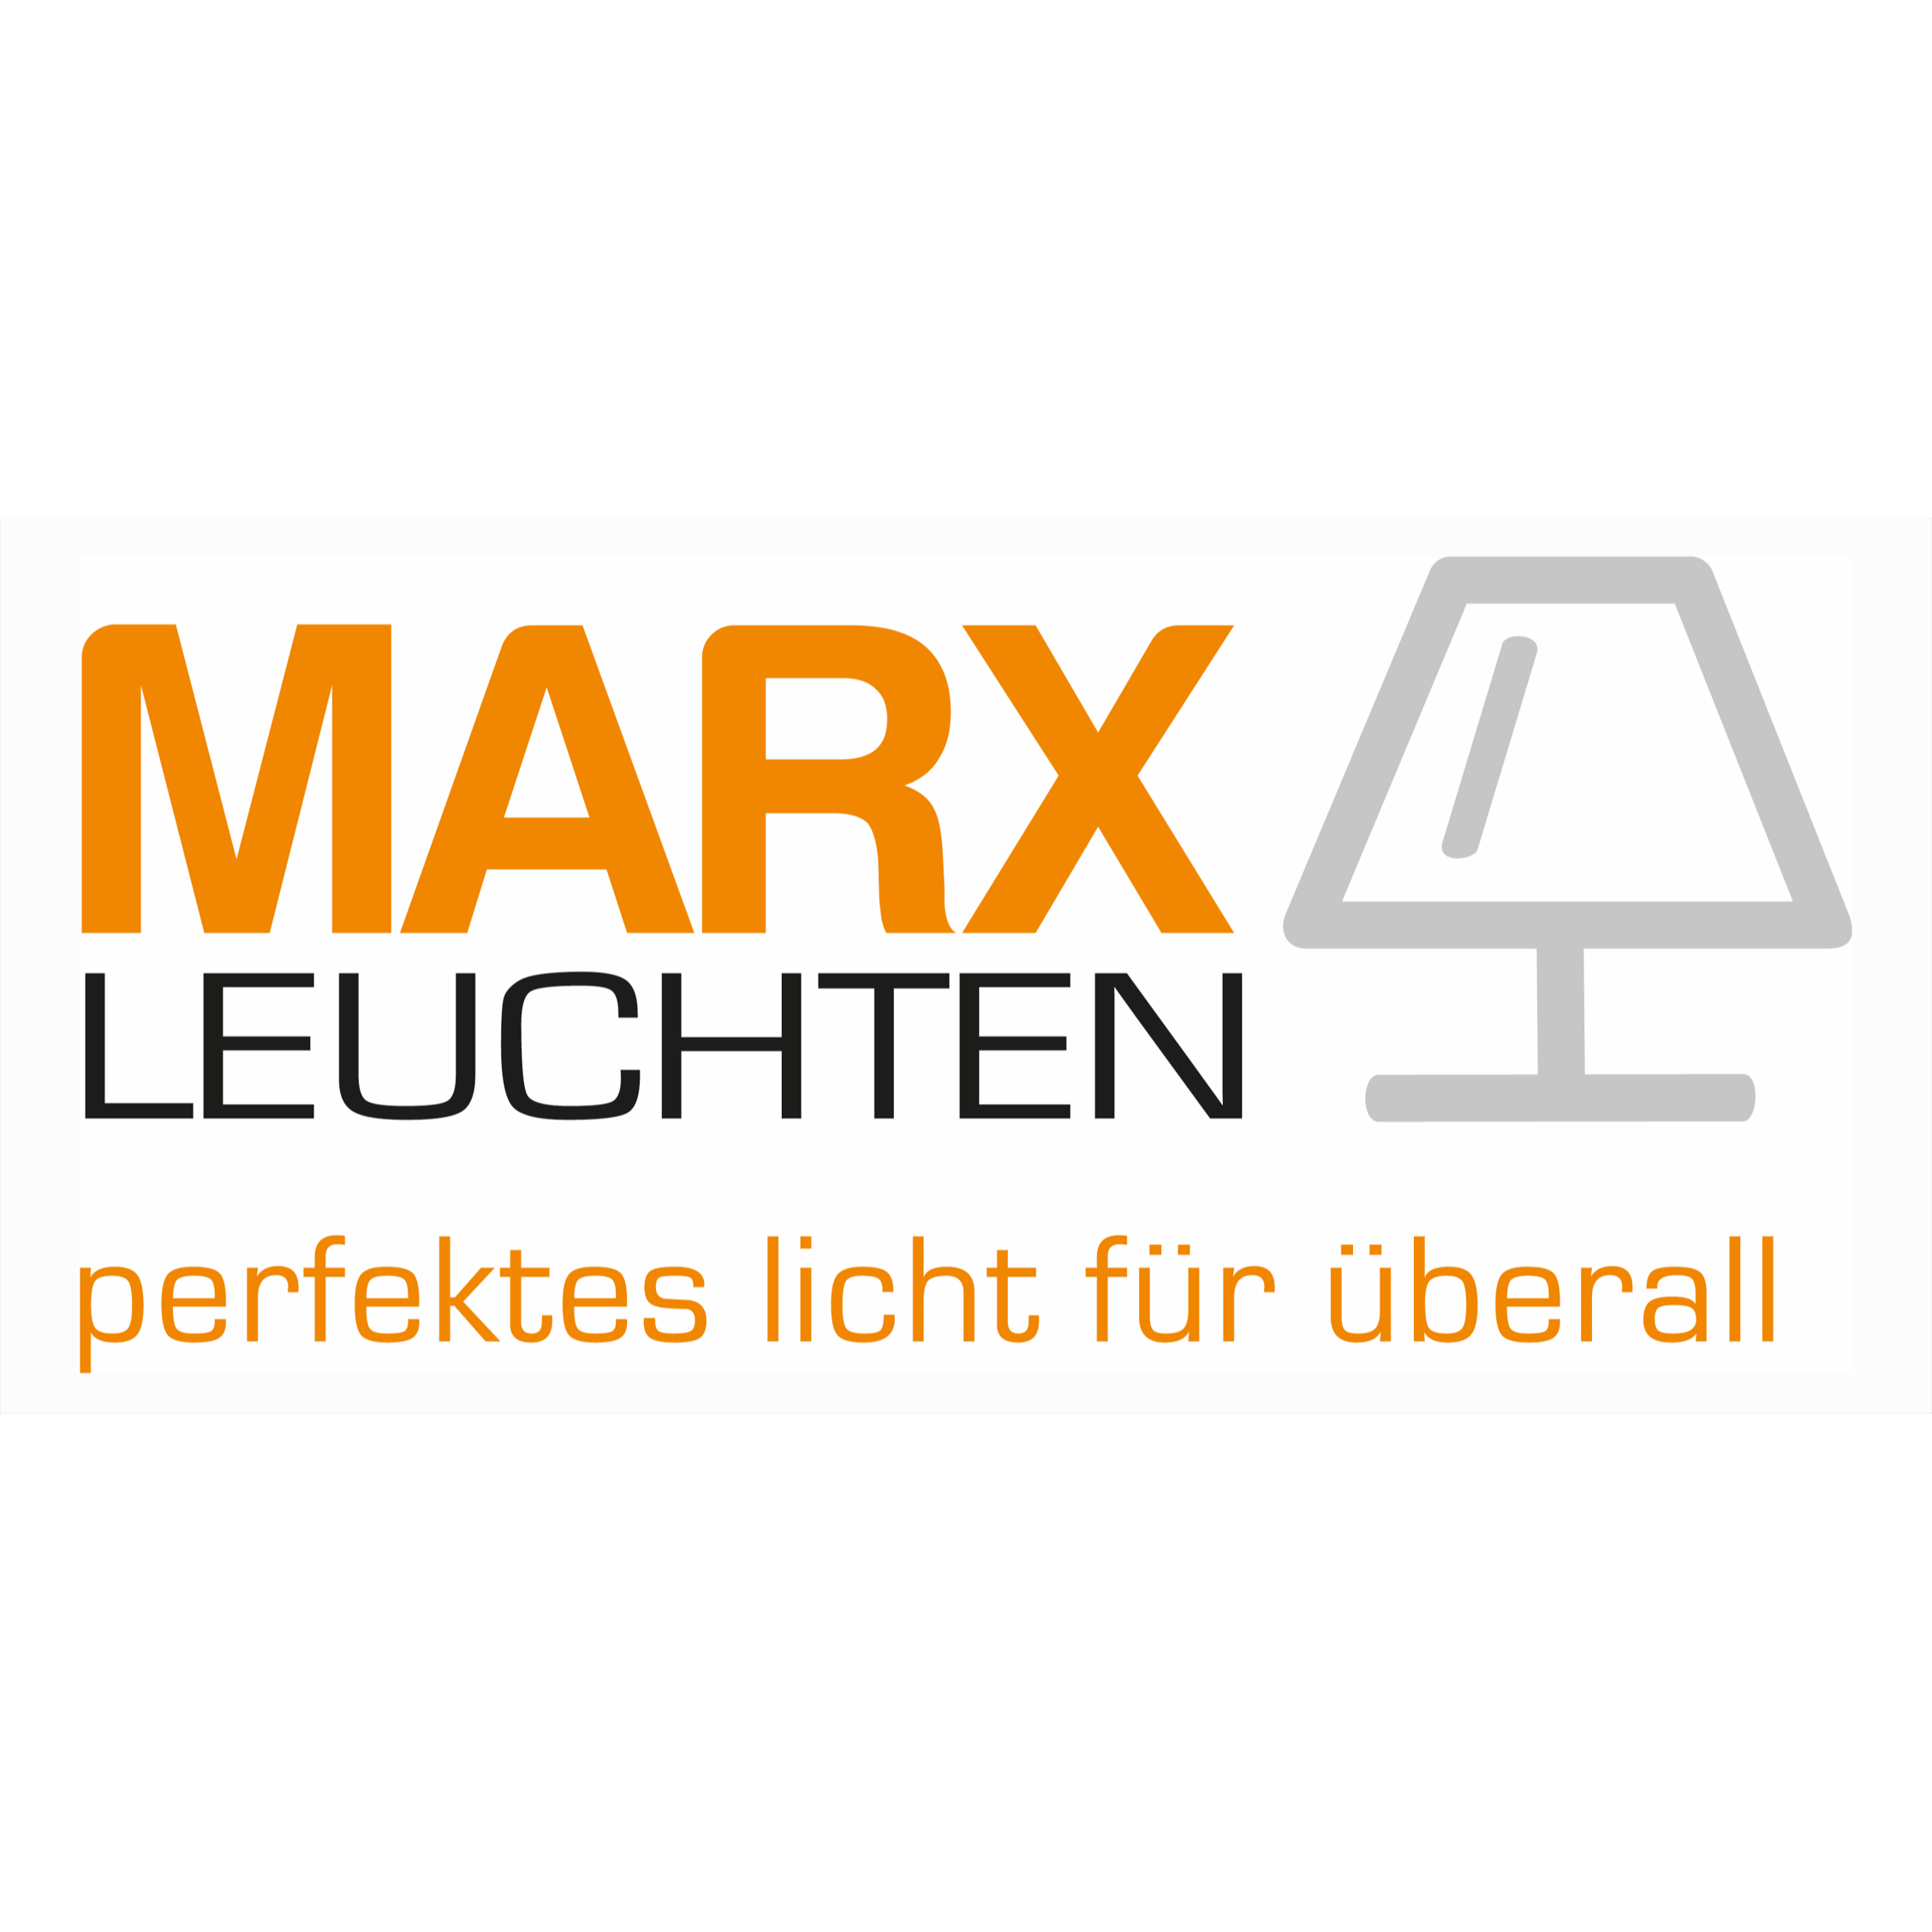 Marx Leuchten in Versmold - Logo